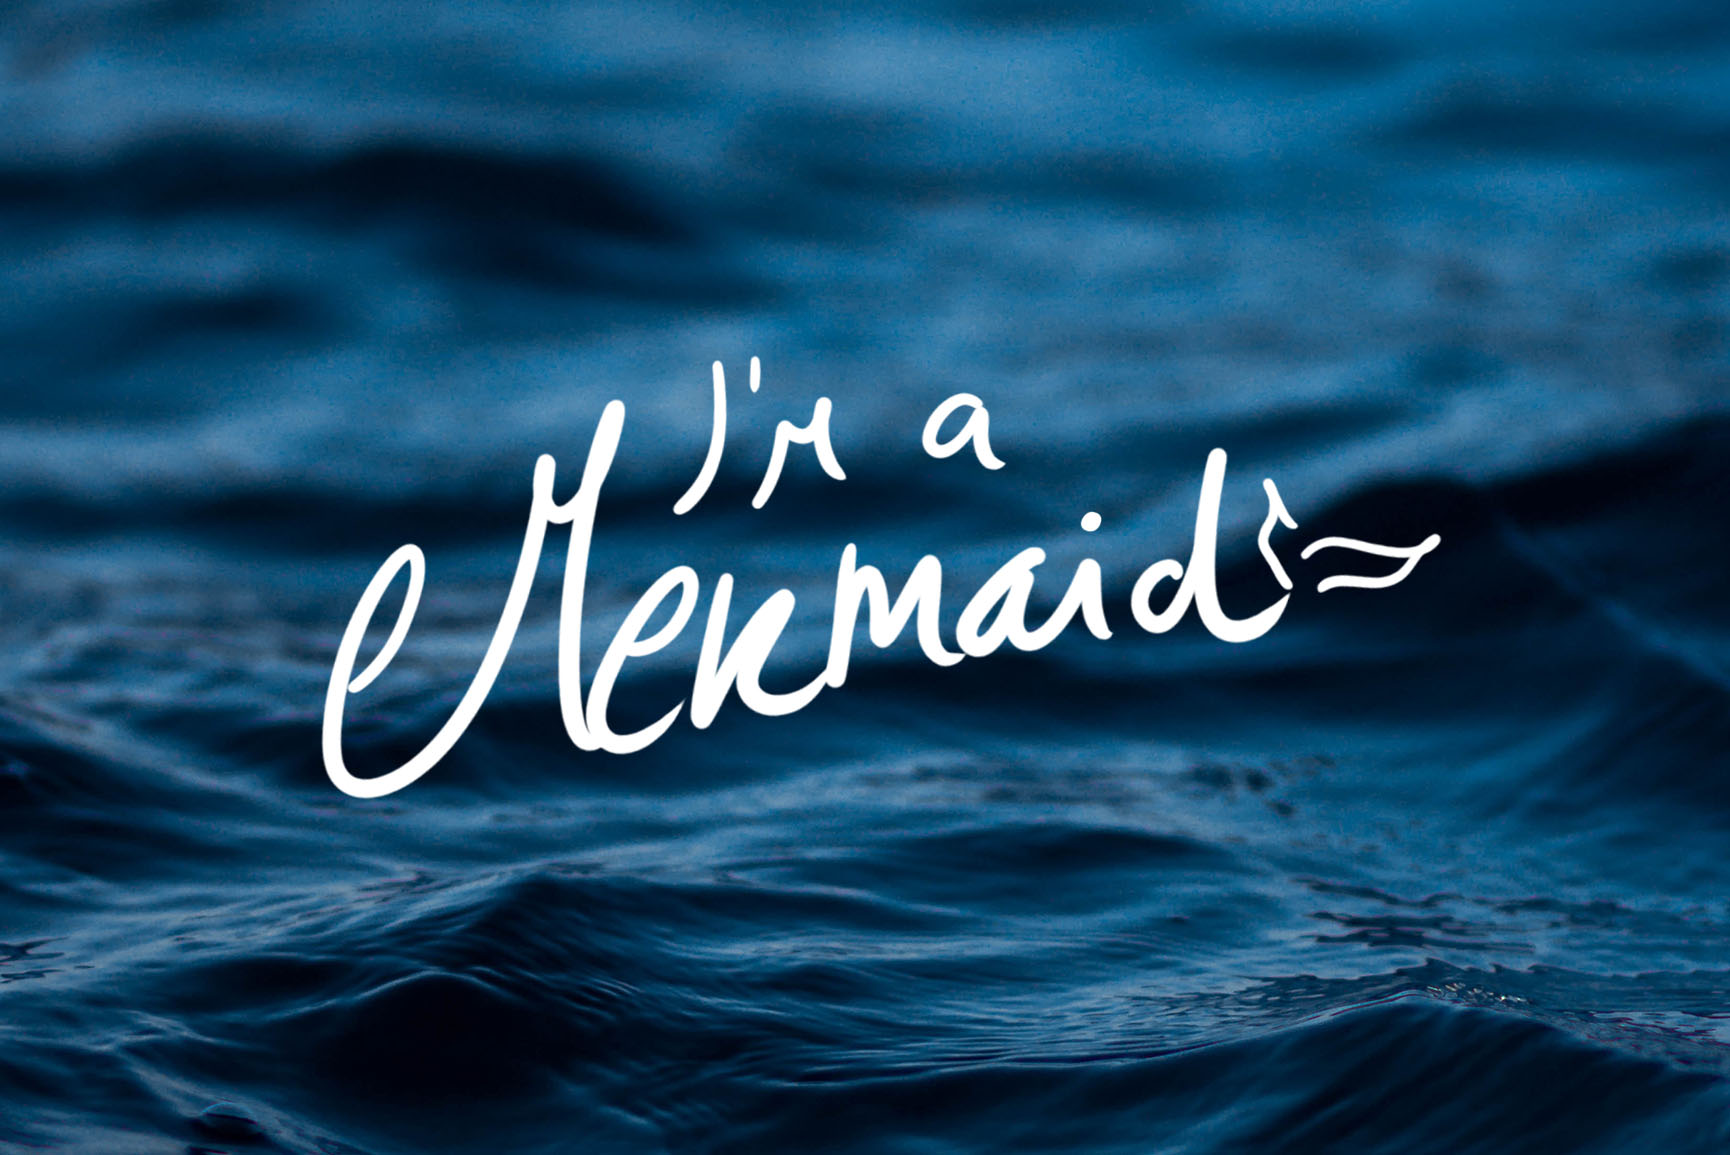 I M A Mermaid iPhone X Wallpaper Preppy